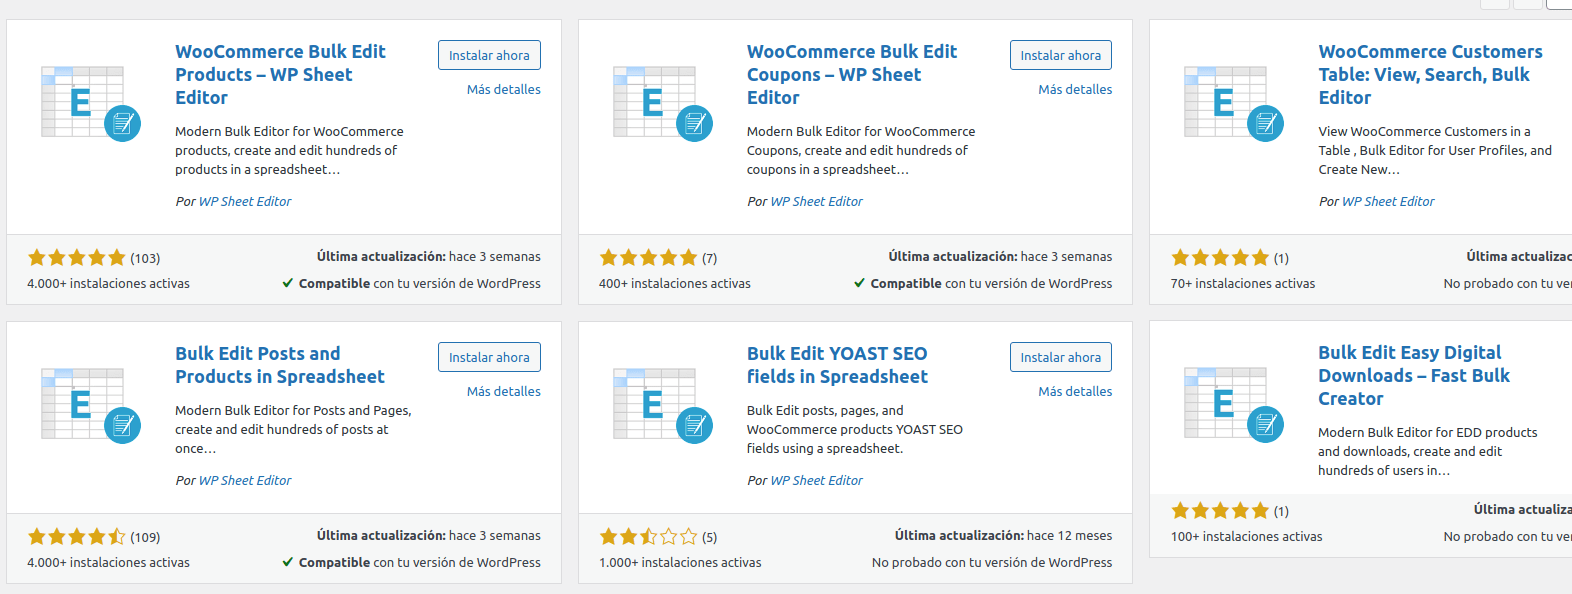 Gestionar productos e inventario de WooCommerce como un Excel - WP Sheet Editor Múltiples Plugins